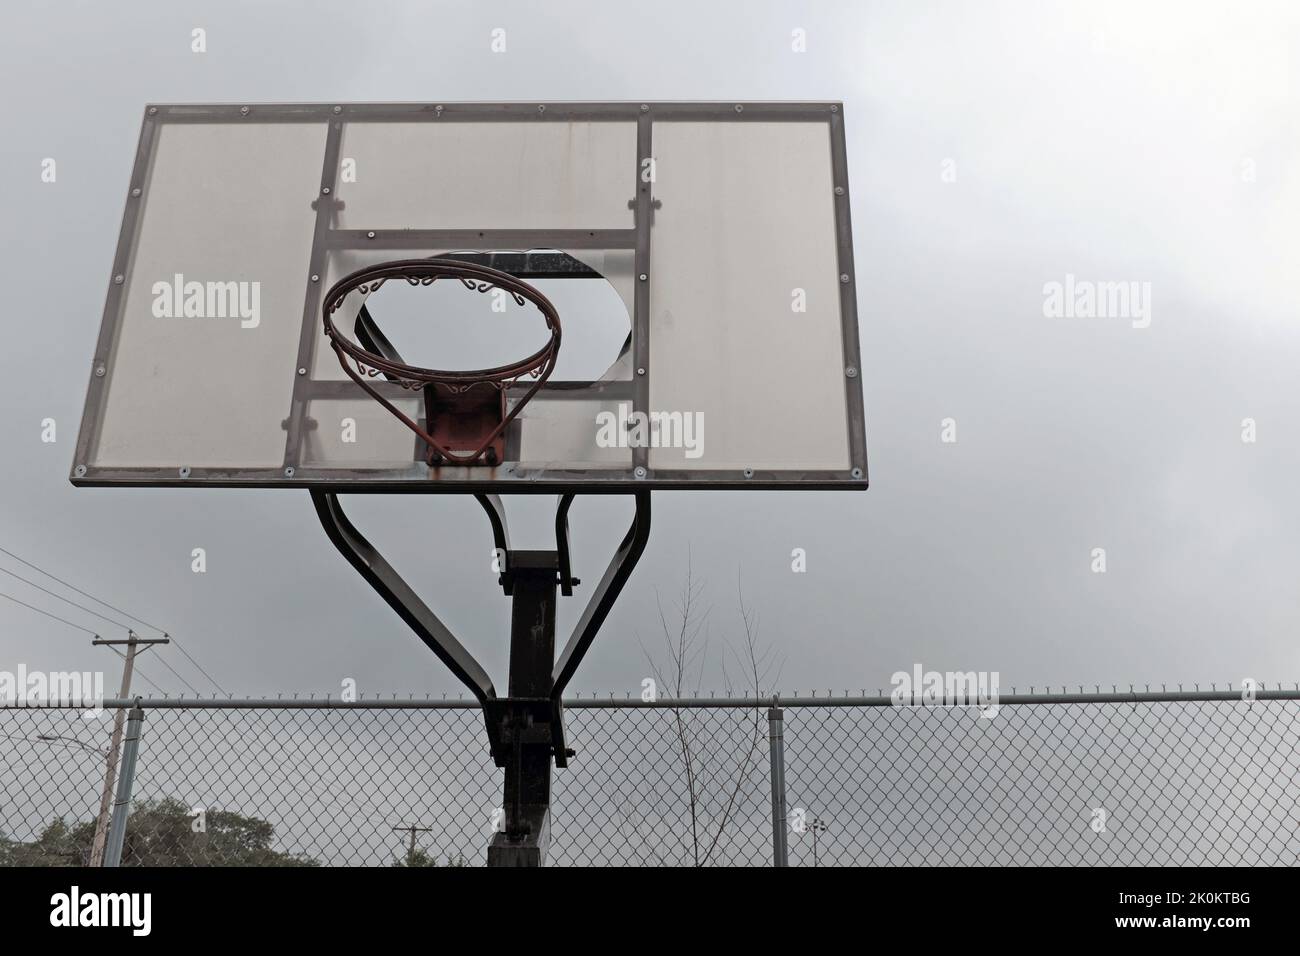 Un aro de baloncesto ruinoso sin red y tablero trasero roto se sienta descuidado en un patio de recreo. Foto de stock